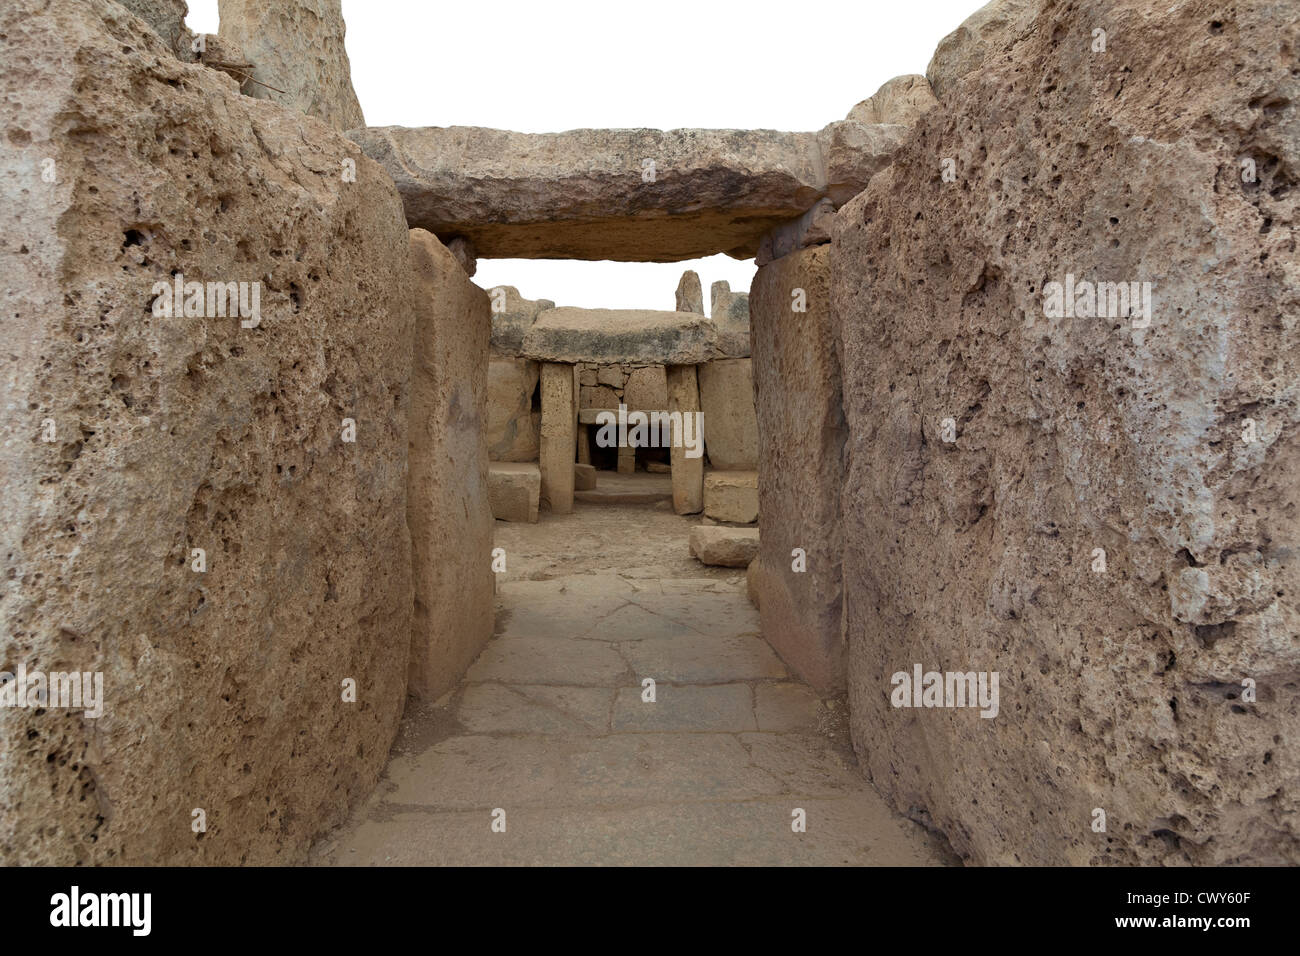 Passaggio alla camera interna a Mnajdra templi vicino a Hagar Qim, Qrendi, isola di Malta Foto Stock